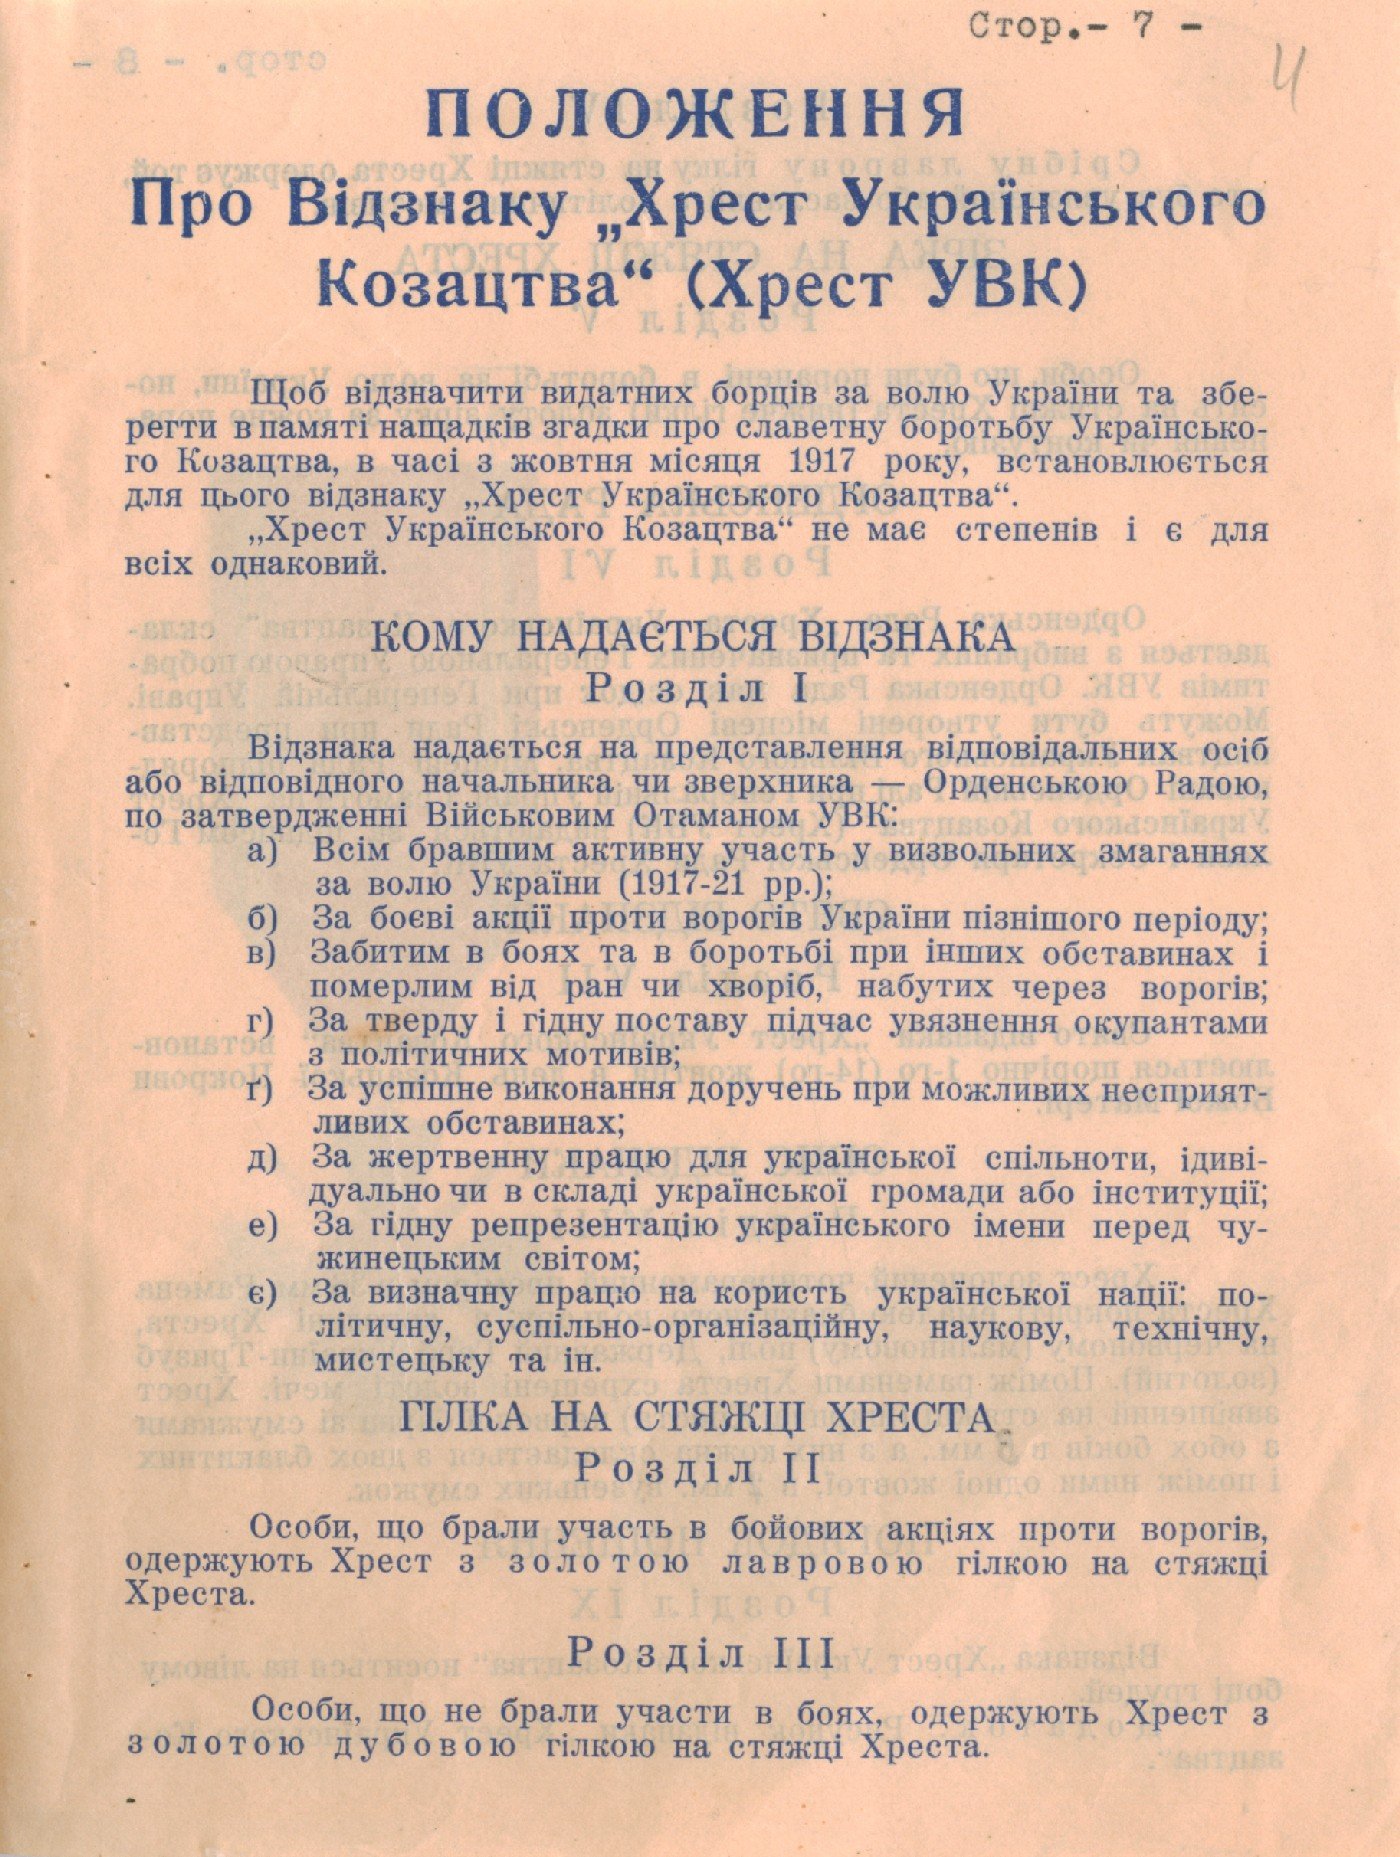 Положення про відзнаку «Хрест Українського Козацтва» (Хрест УВК) та ескіз Хреста. 20 жовтня 1947 р.